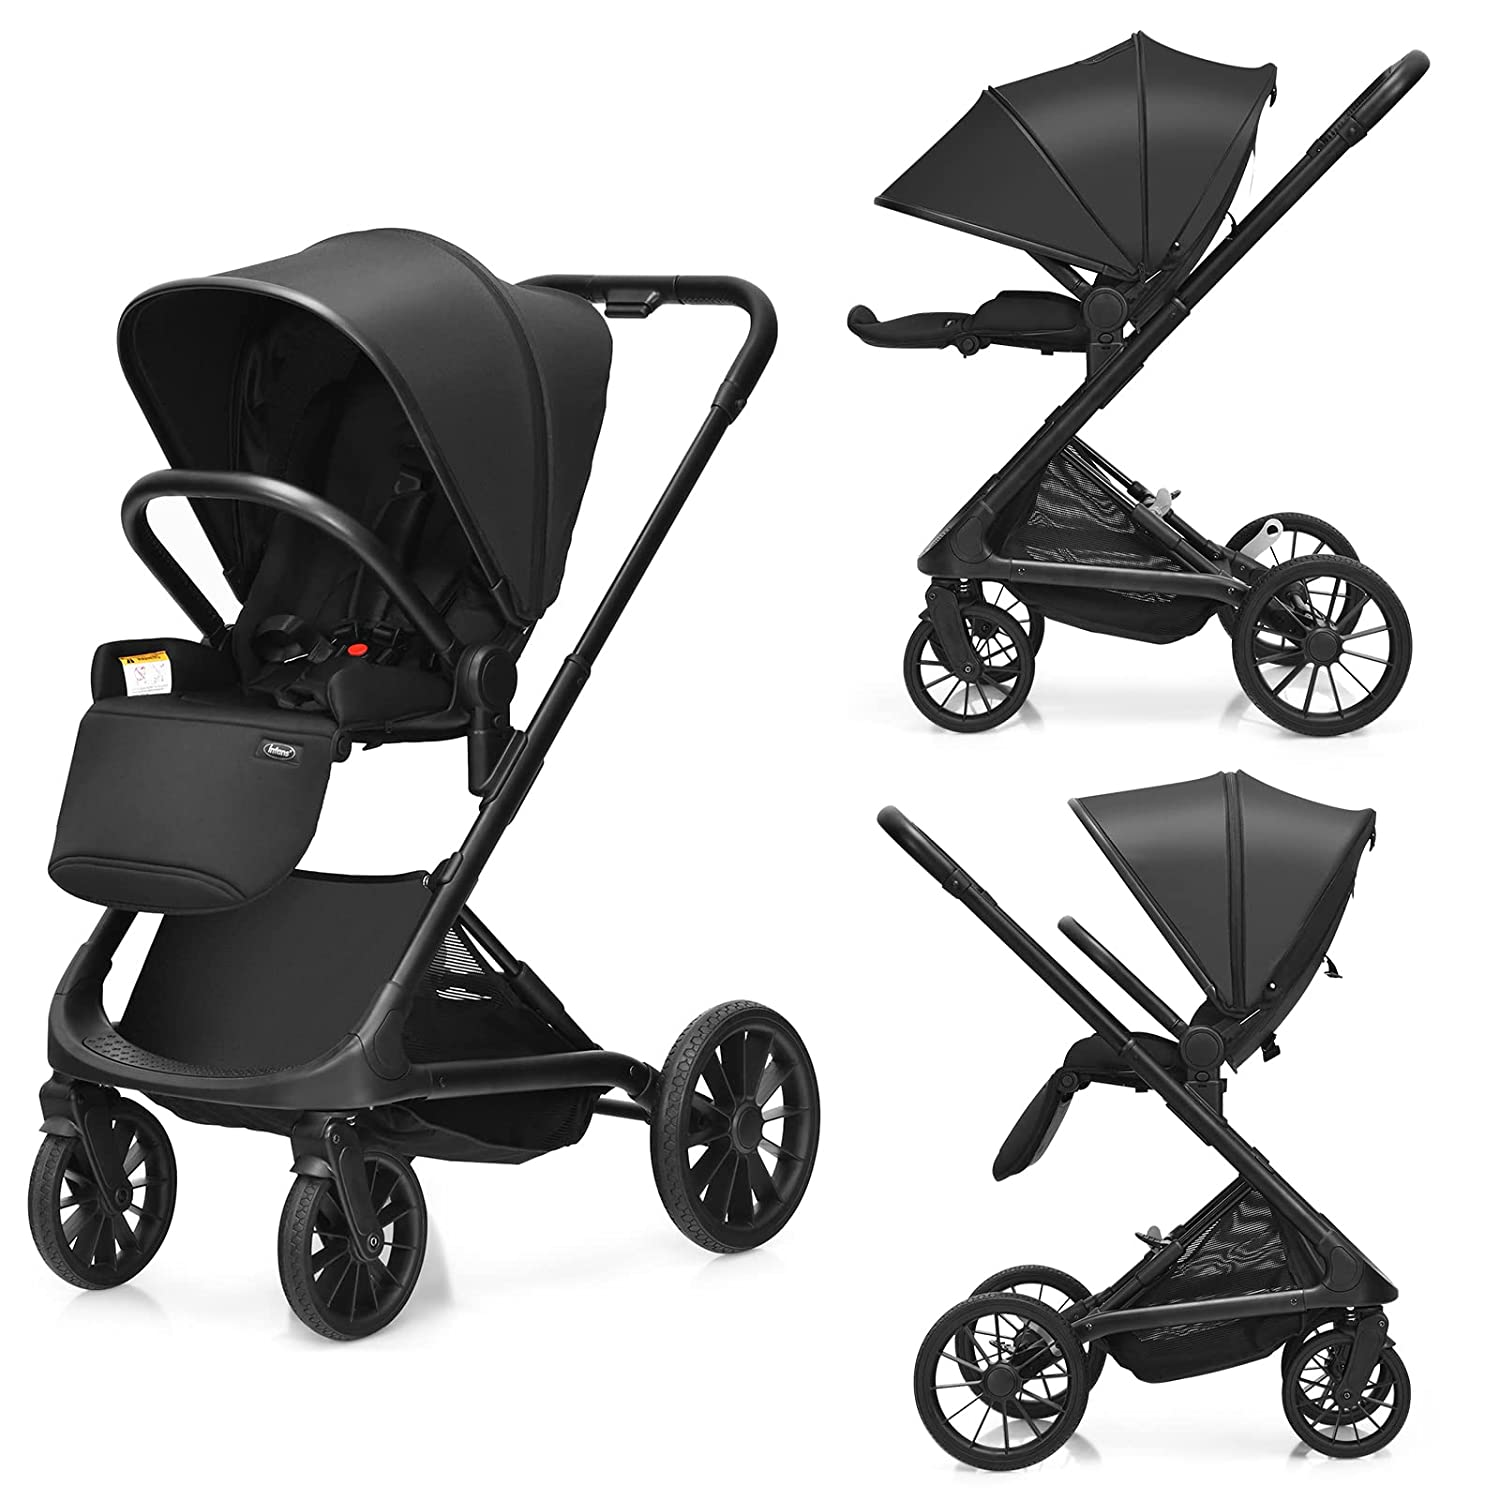 Bassinet black color lightweight stroller